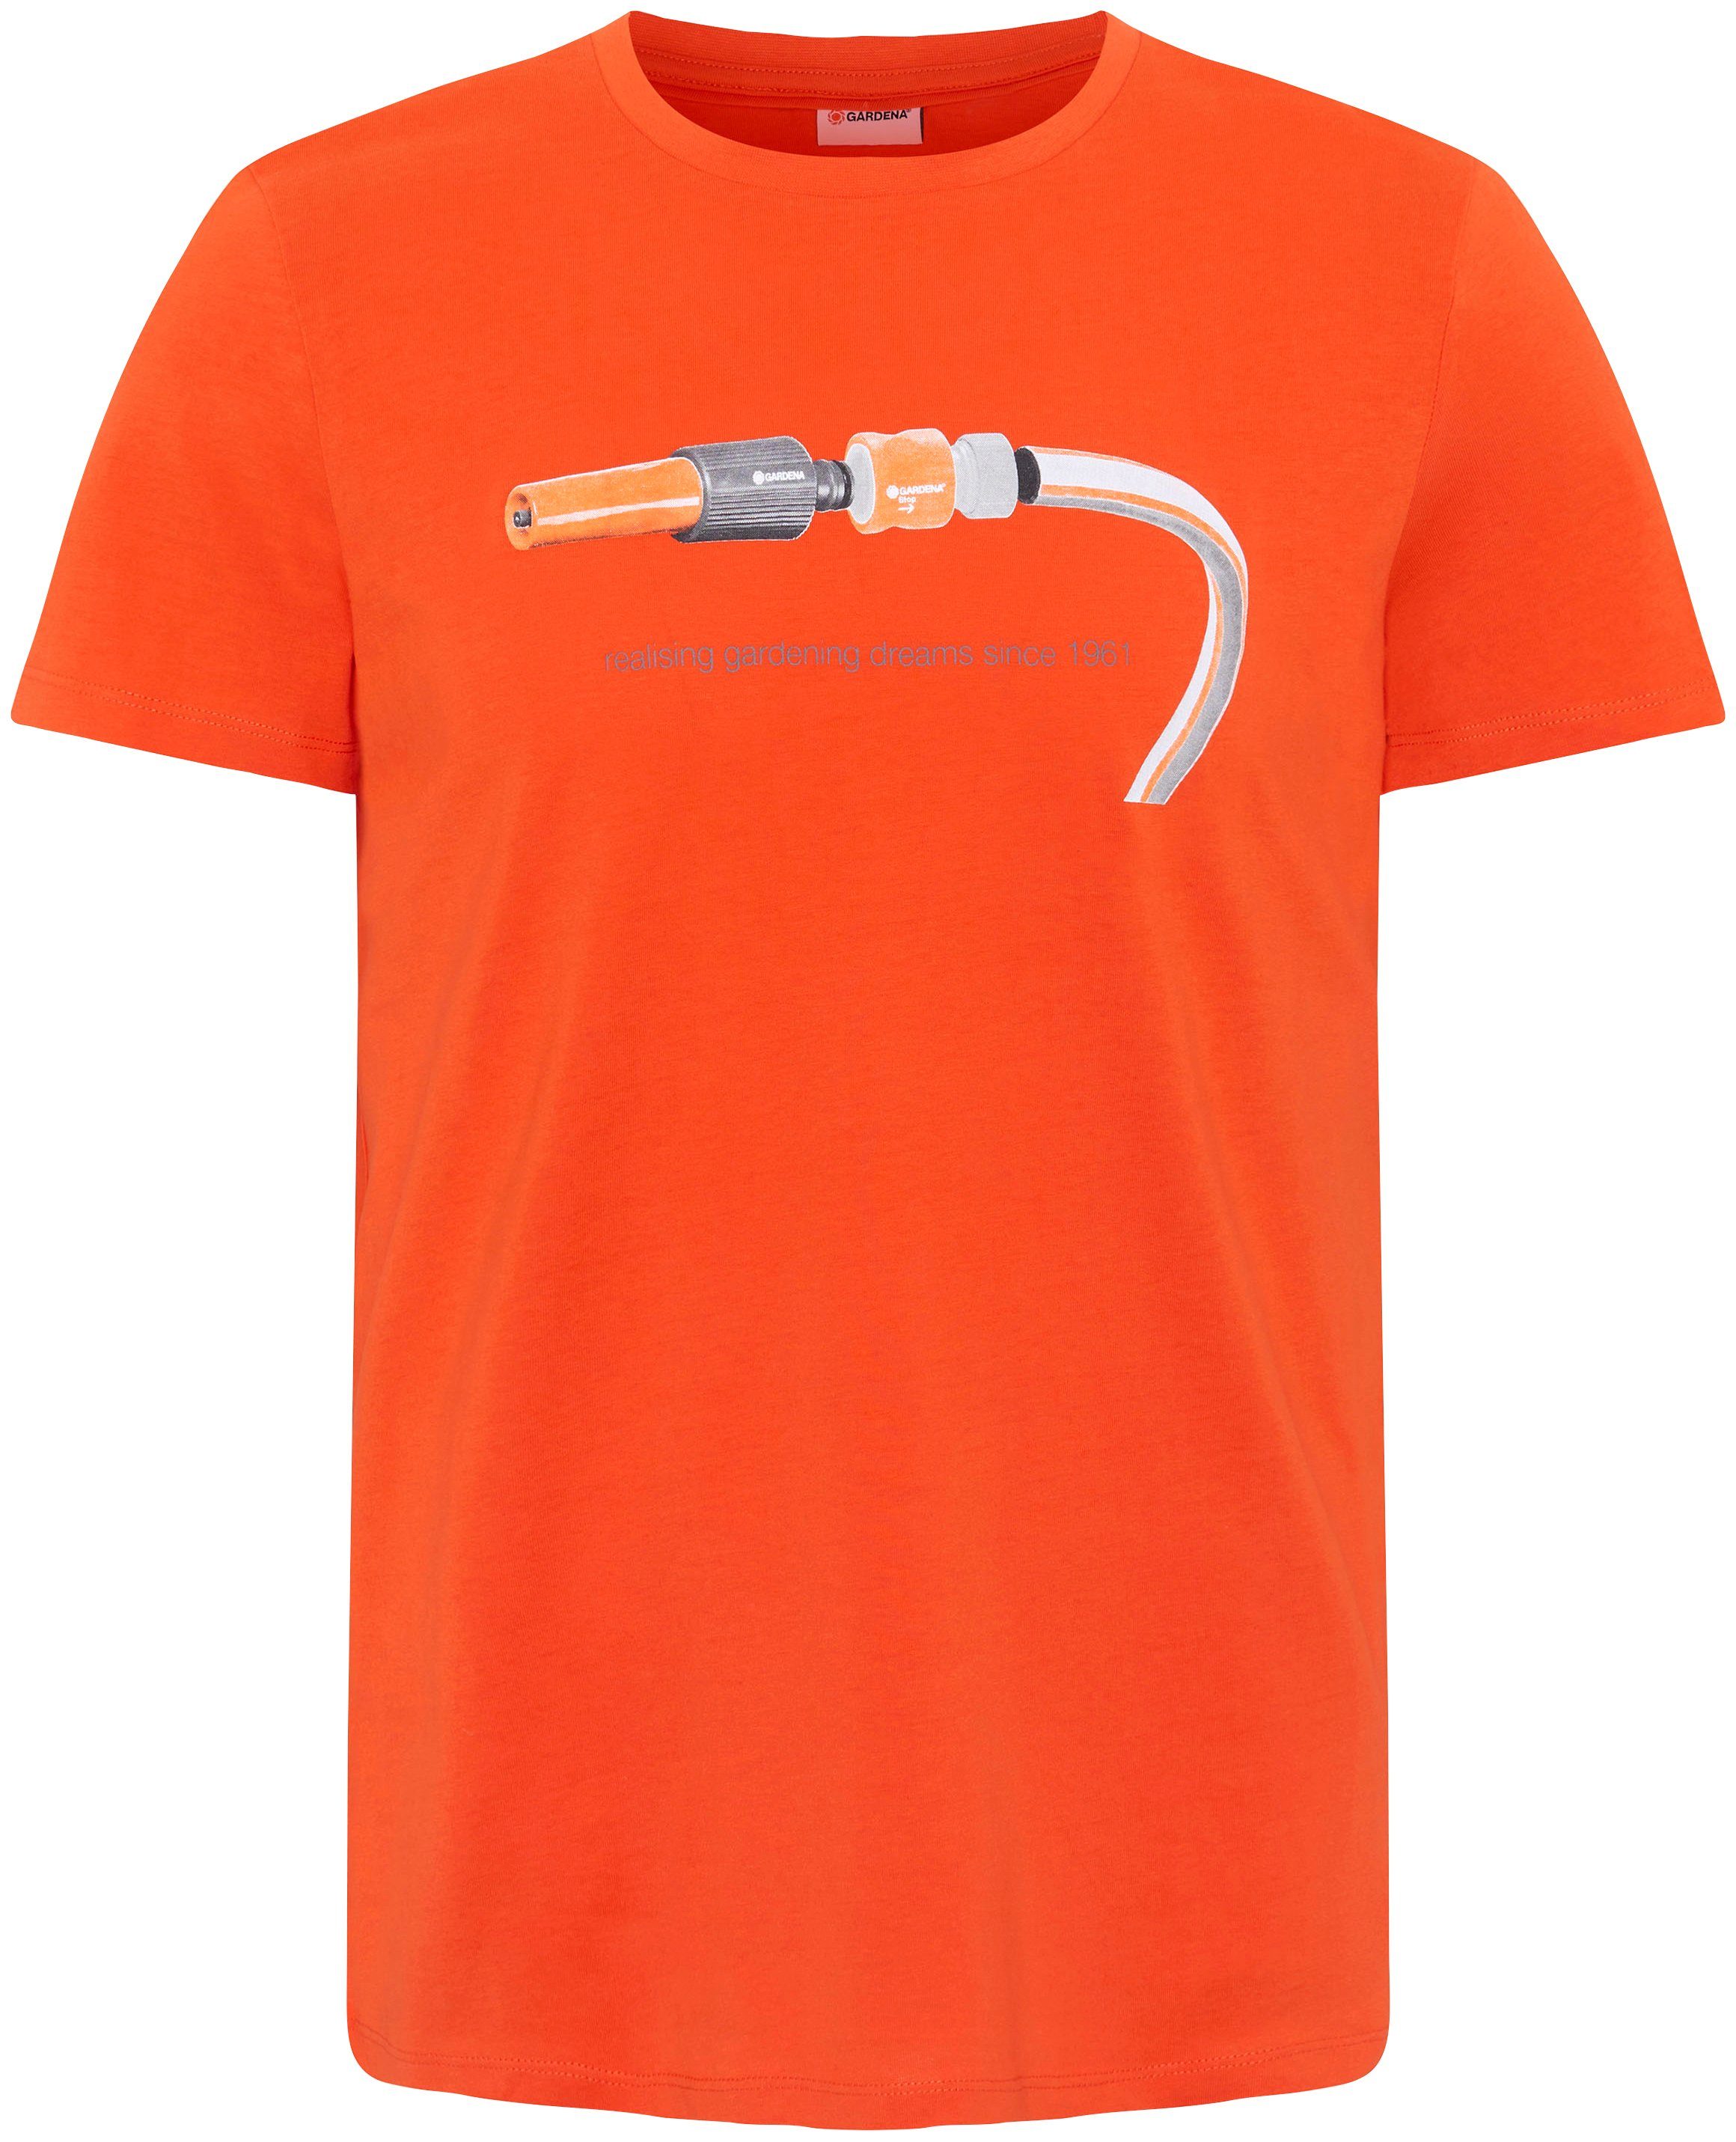 GARDENA T-Shirt Flame mit Aufdruck